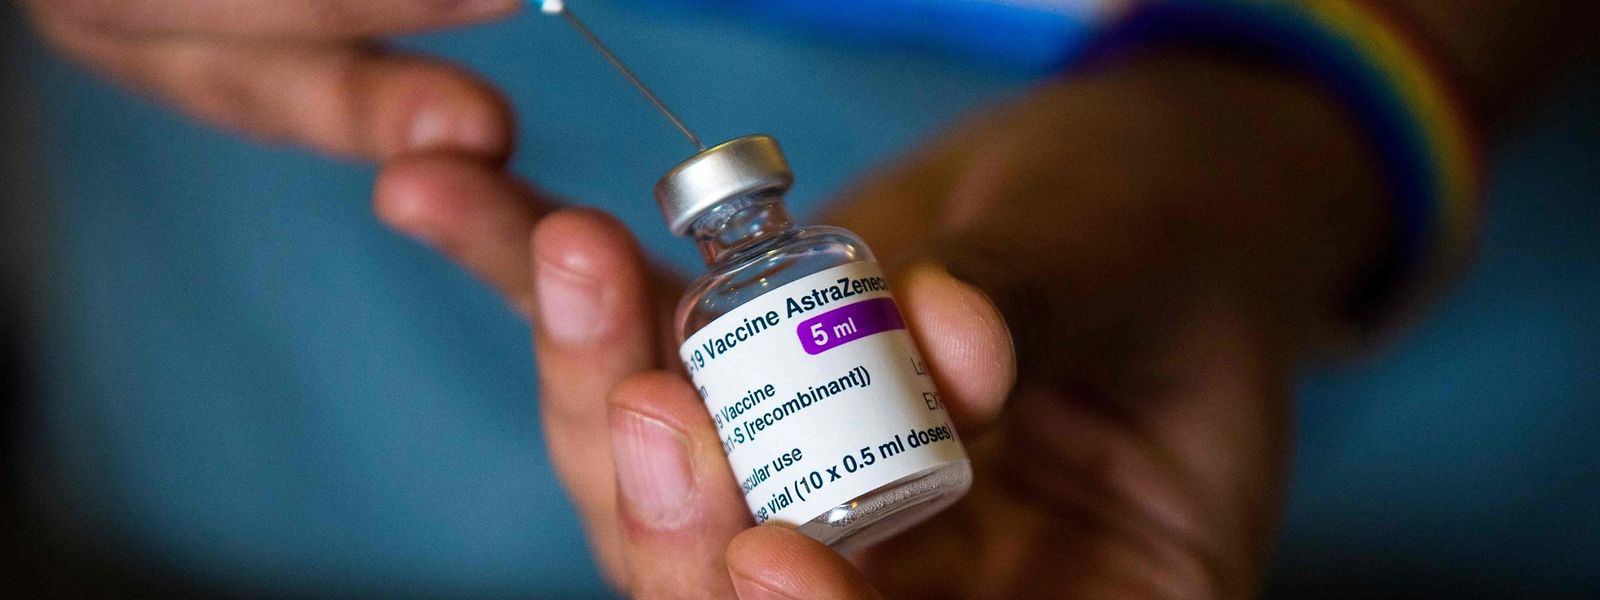 Selon le virologue, le vaccin reste le seul moyen de maîtriser la pandémie.